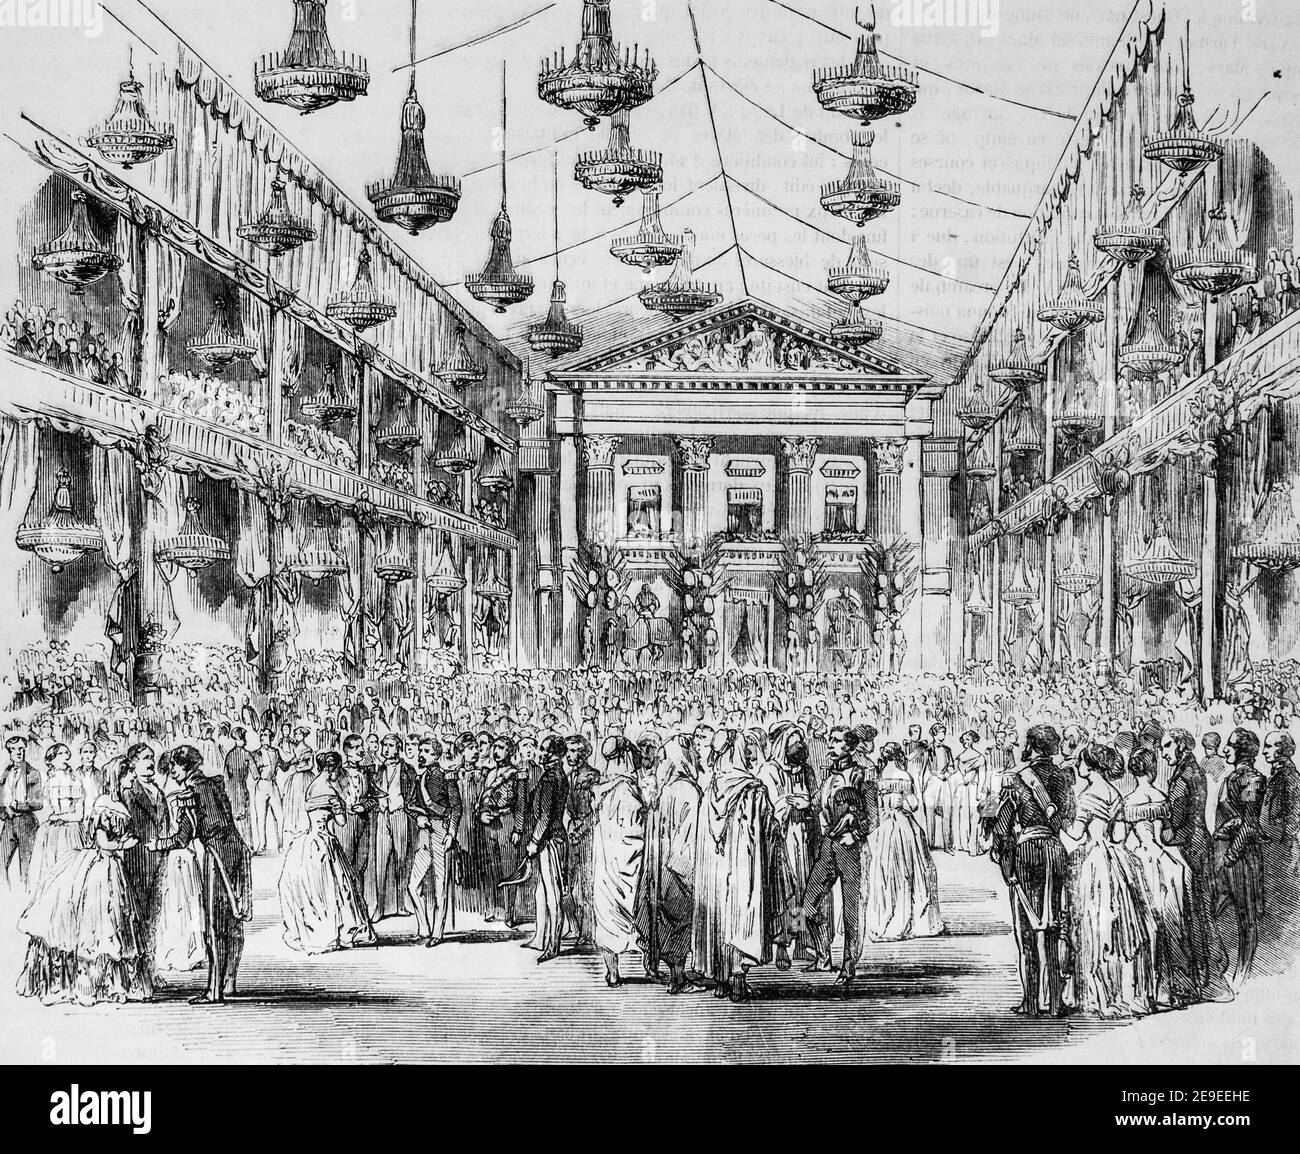 salle de bal dans la cour de l'ecole militaire le 10 mai 1852,tableau de paris par edmond texier,editeur paulin et le chavalier 1853 Stock Photo